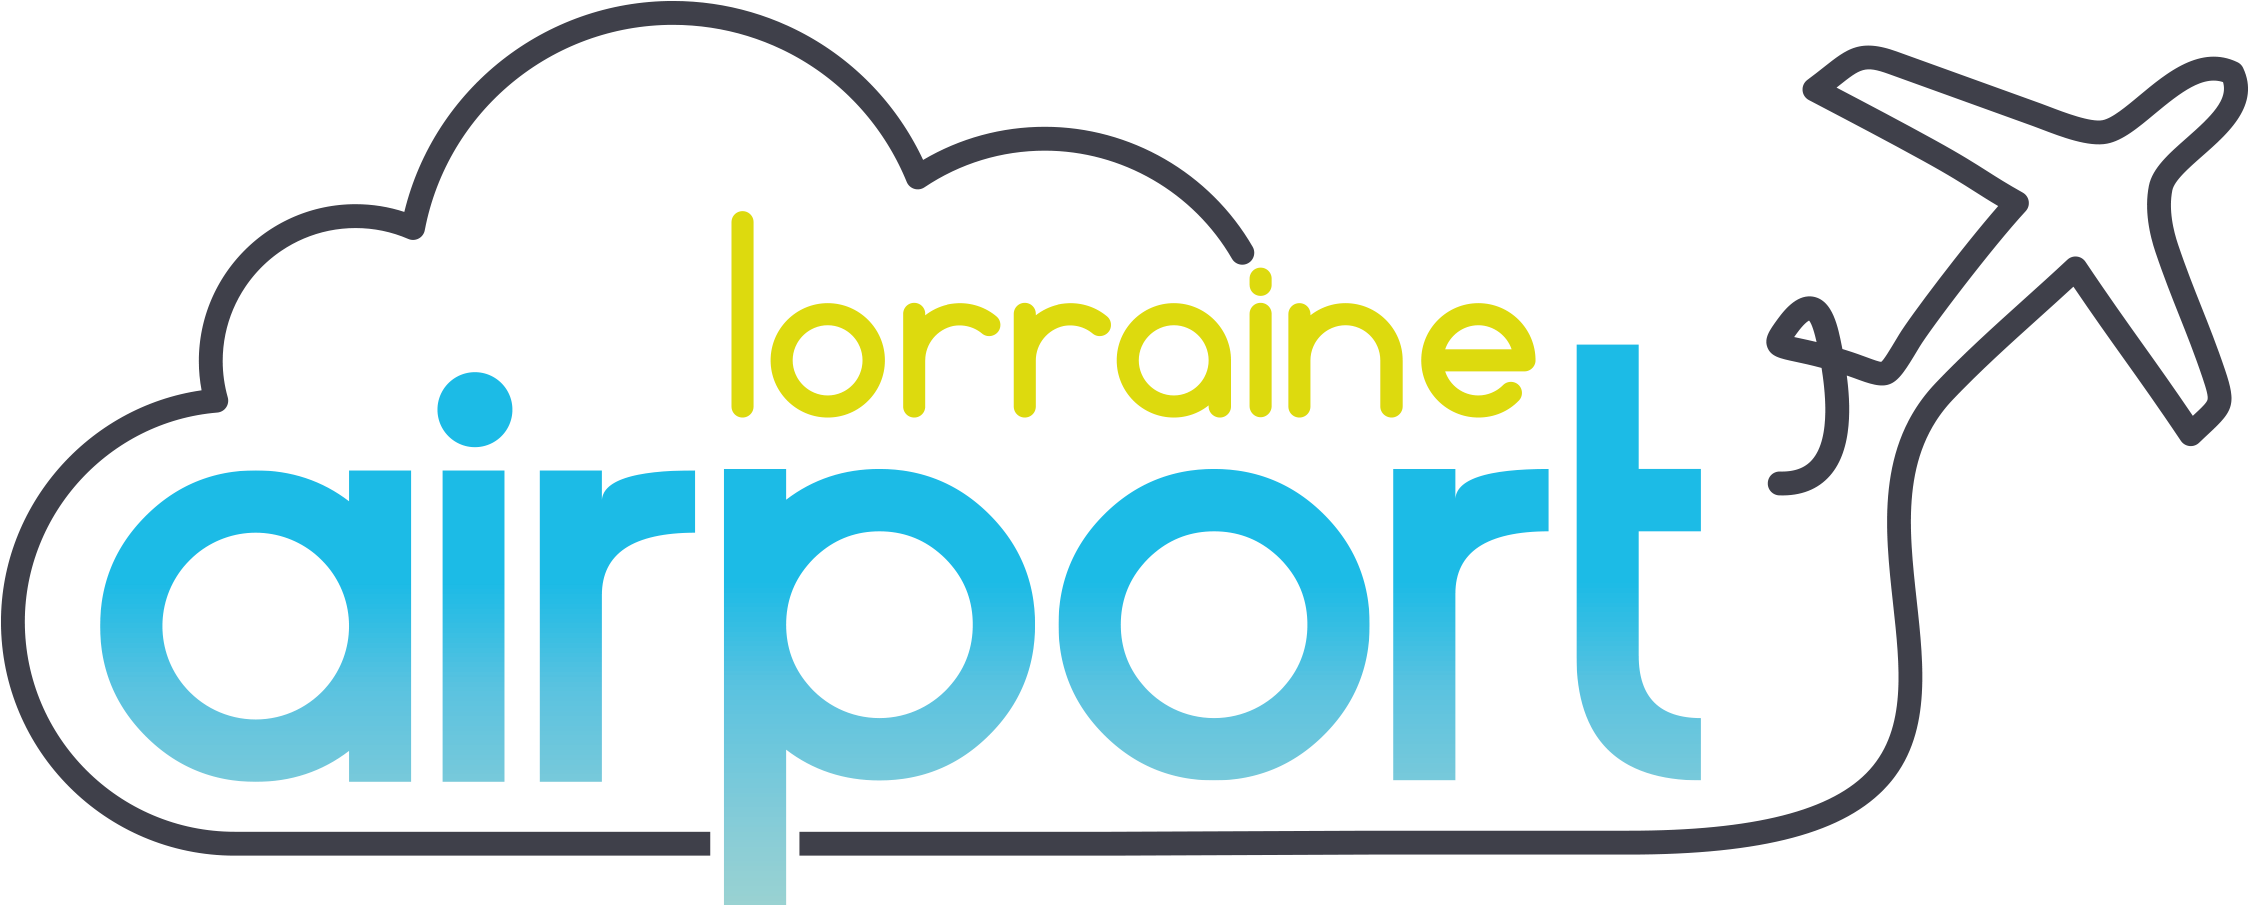 Lorraine Airport Lorraine Airport - Metz–nancy–lorraine Airport (2362x1263)